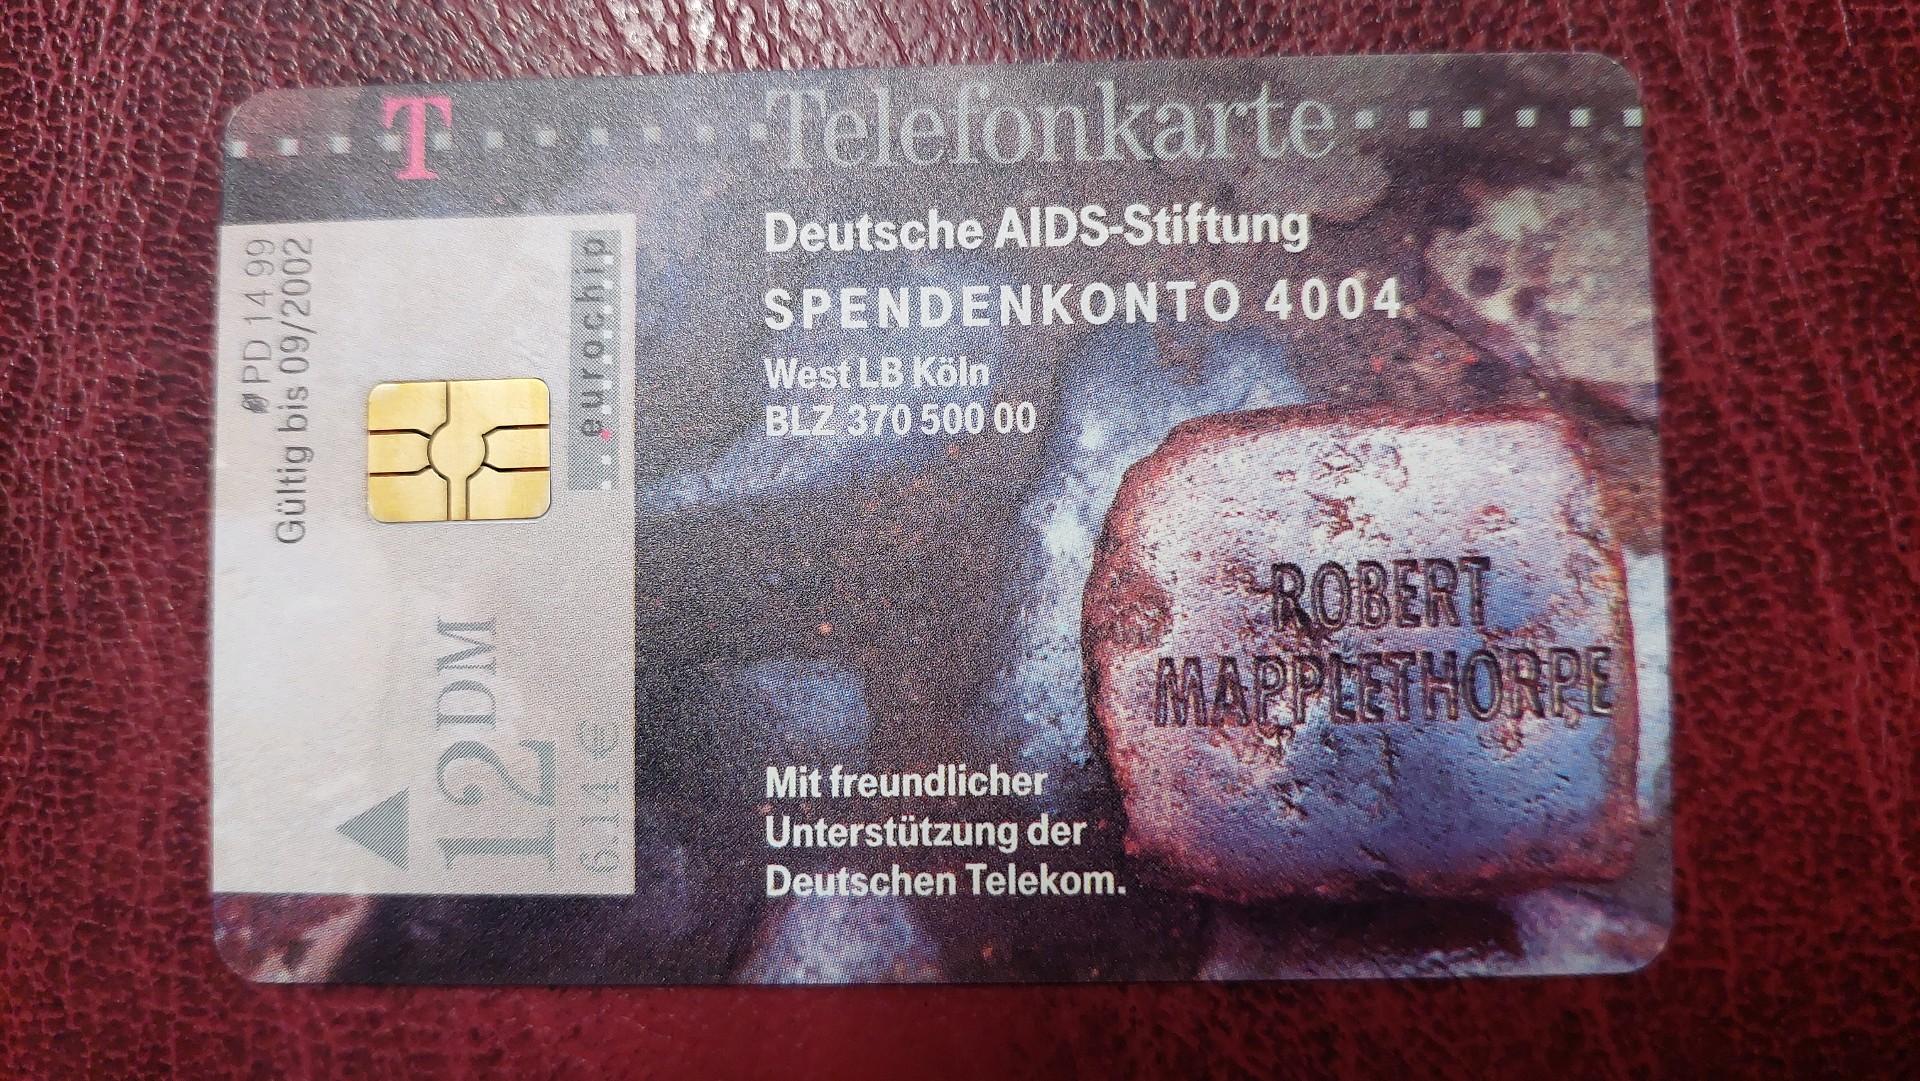 Sena telefono kortelė 12 DM Deutsche AIDS-Stiftung